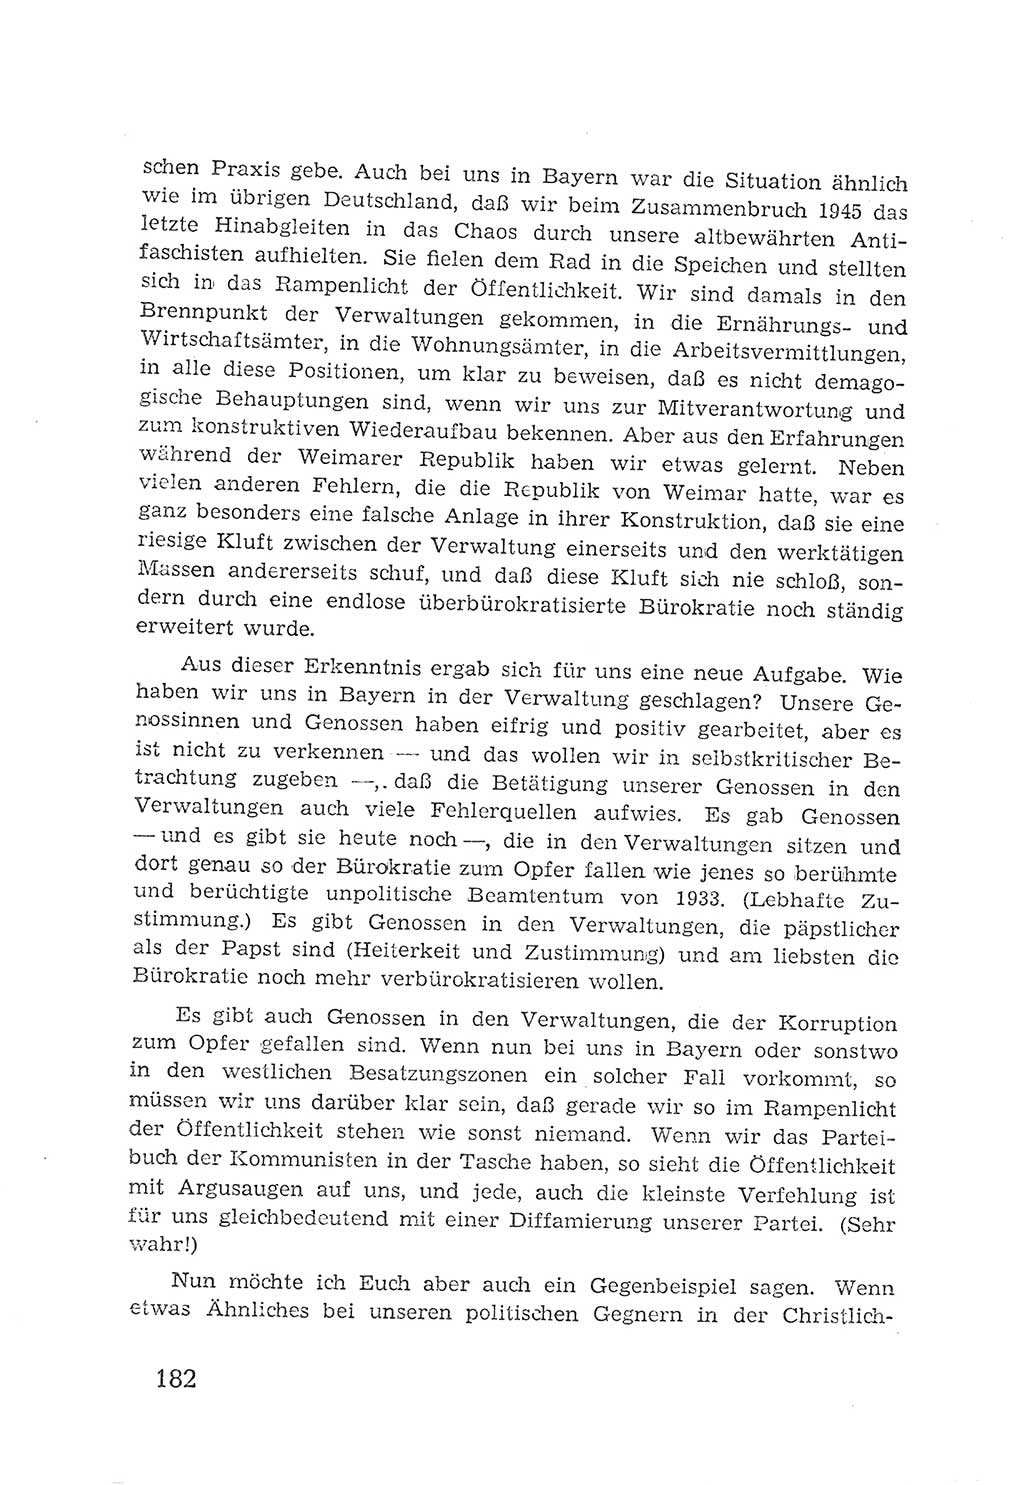 Protokoll der Verhandlungen des 2. Parteitages der Sozialistischen Einheitspartei Deutschlands (SED) [Sowjetische Besatzungszone (SBZ) Deutschlands] 1947, Seite 182 (Prot. Verh. 2. PT SED SBZ Dtl. 1947, S. 182)